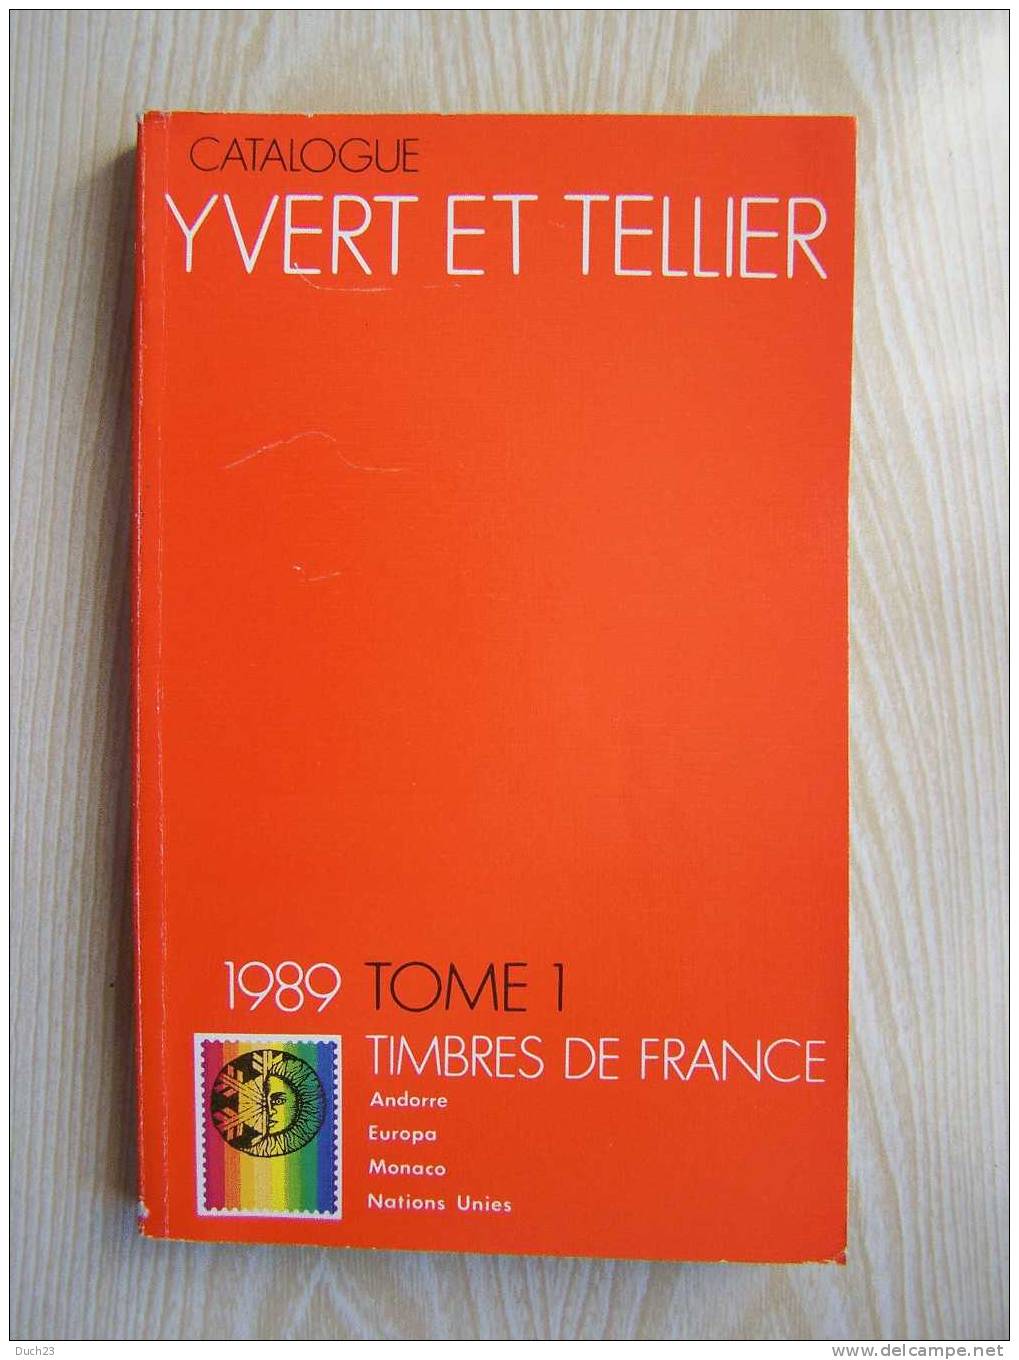 CATALOGUE DE COTATION YVERT ET TELLIER ANNEE 1989 TOME 1 TRES BON ETAT   REF CD - France